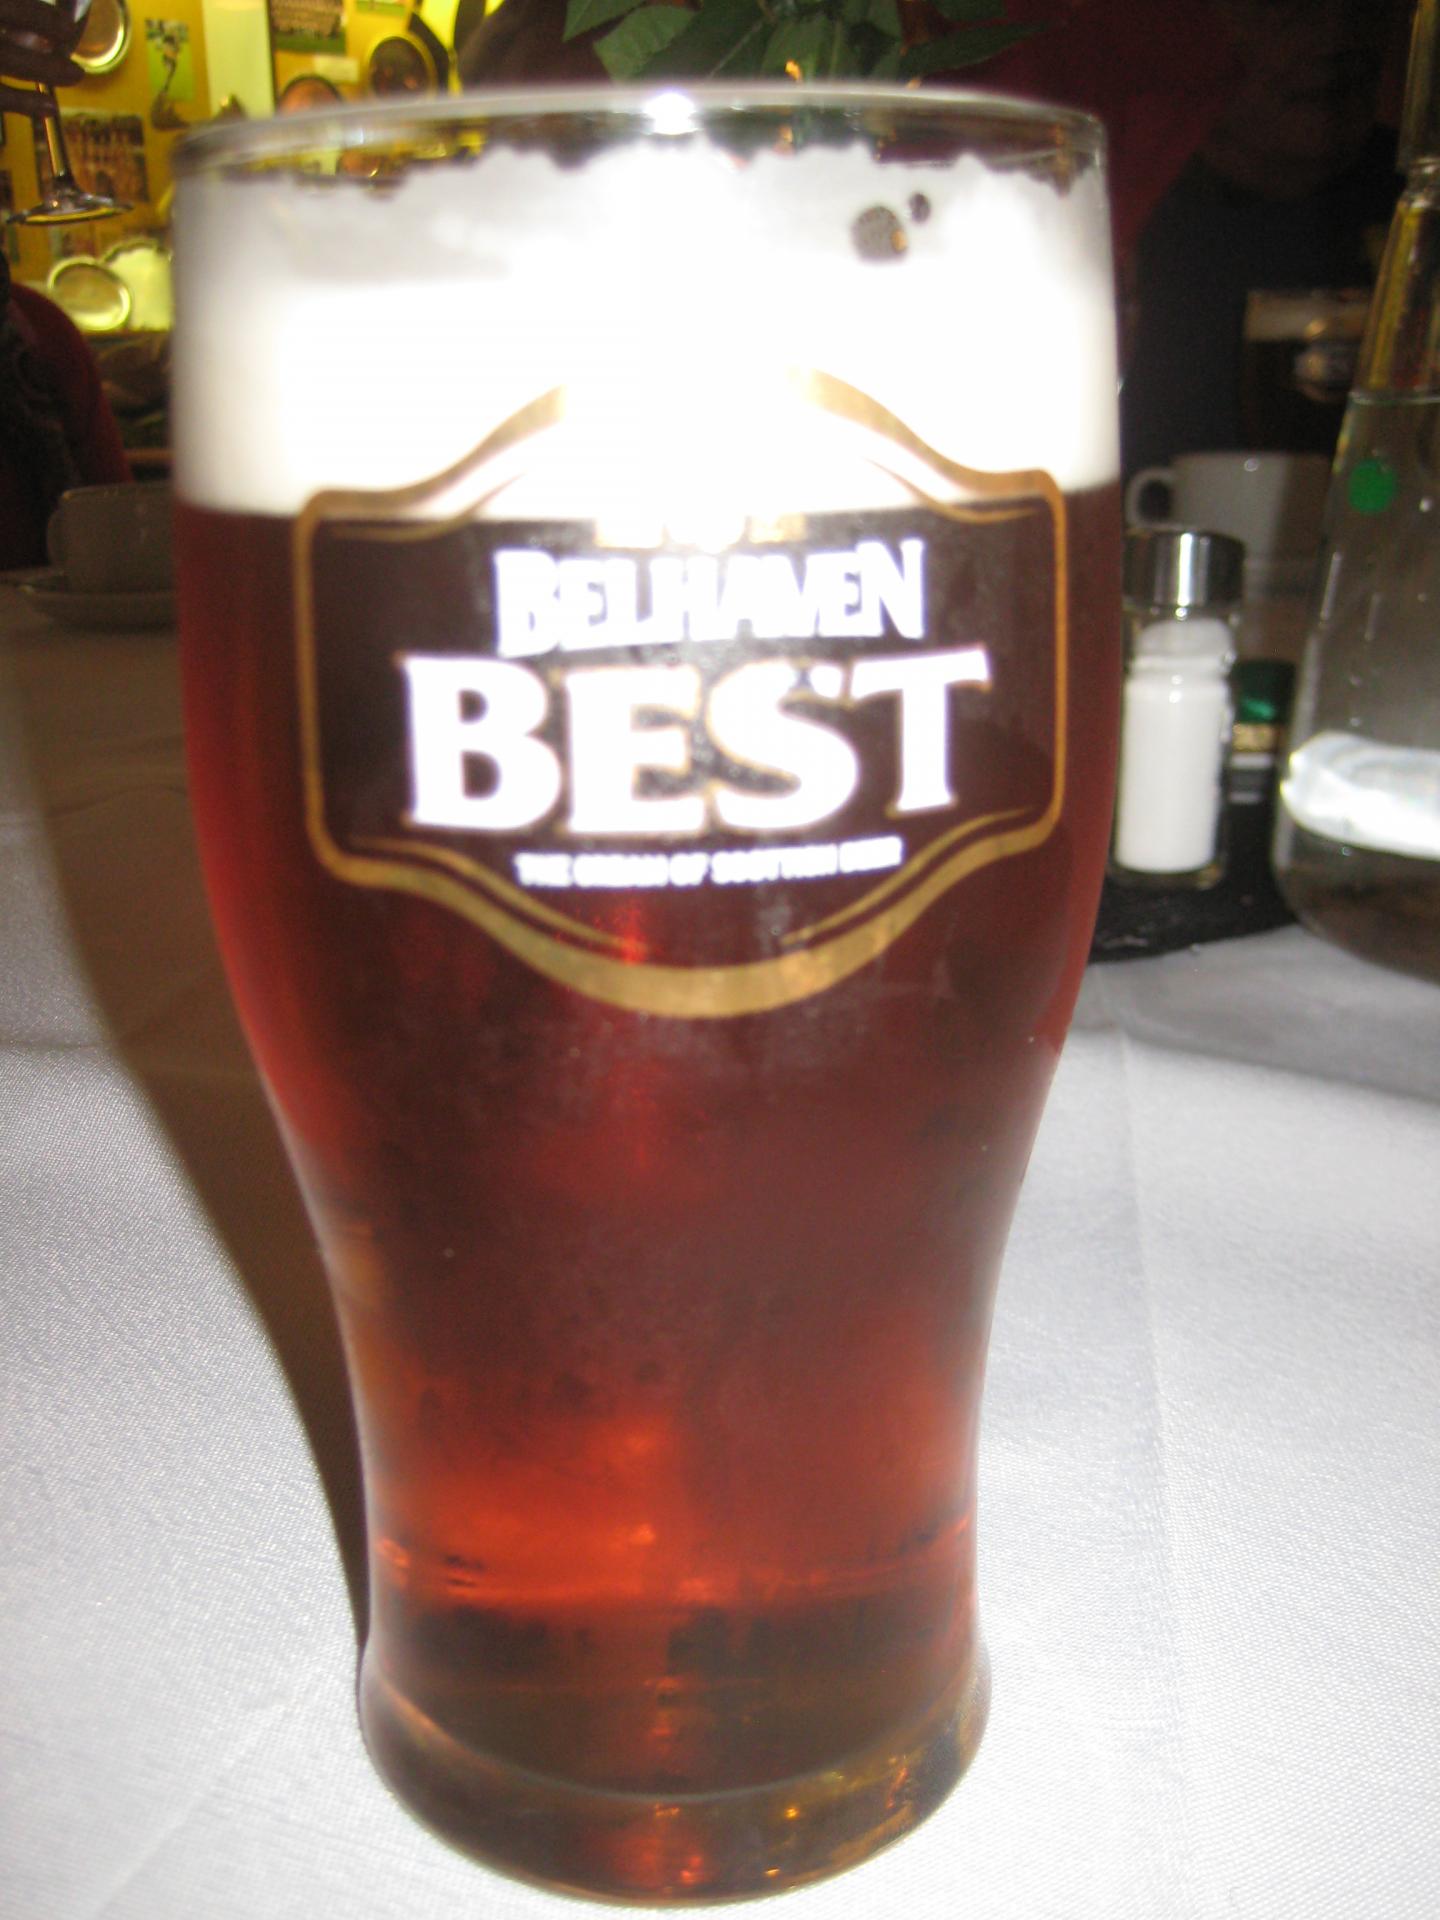 Best beer